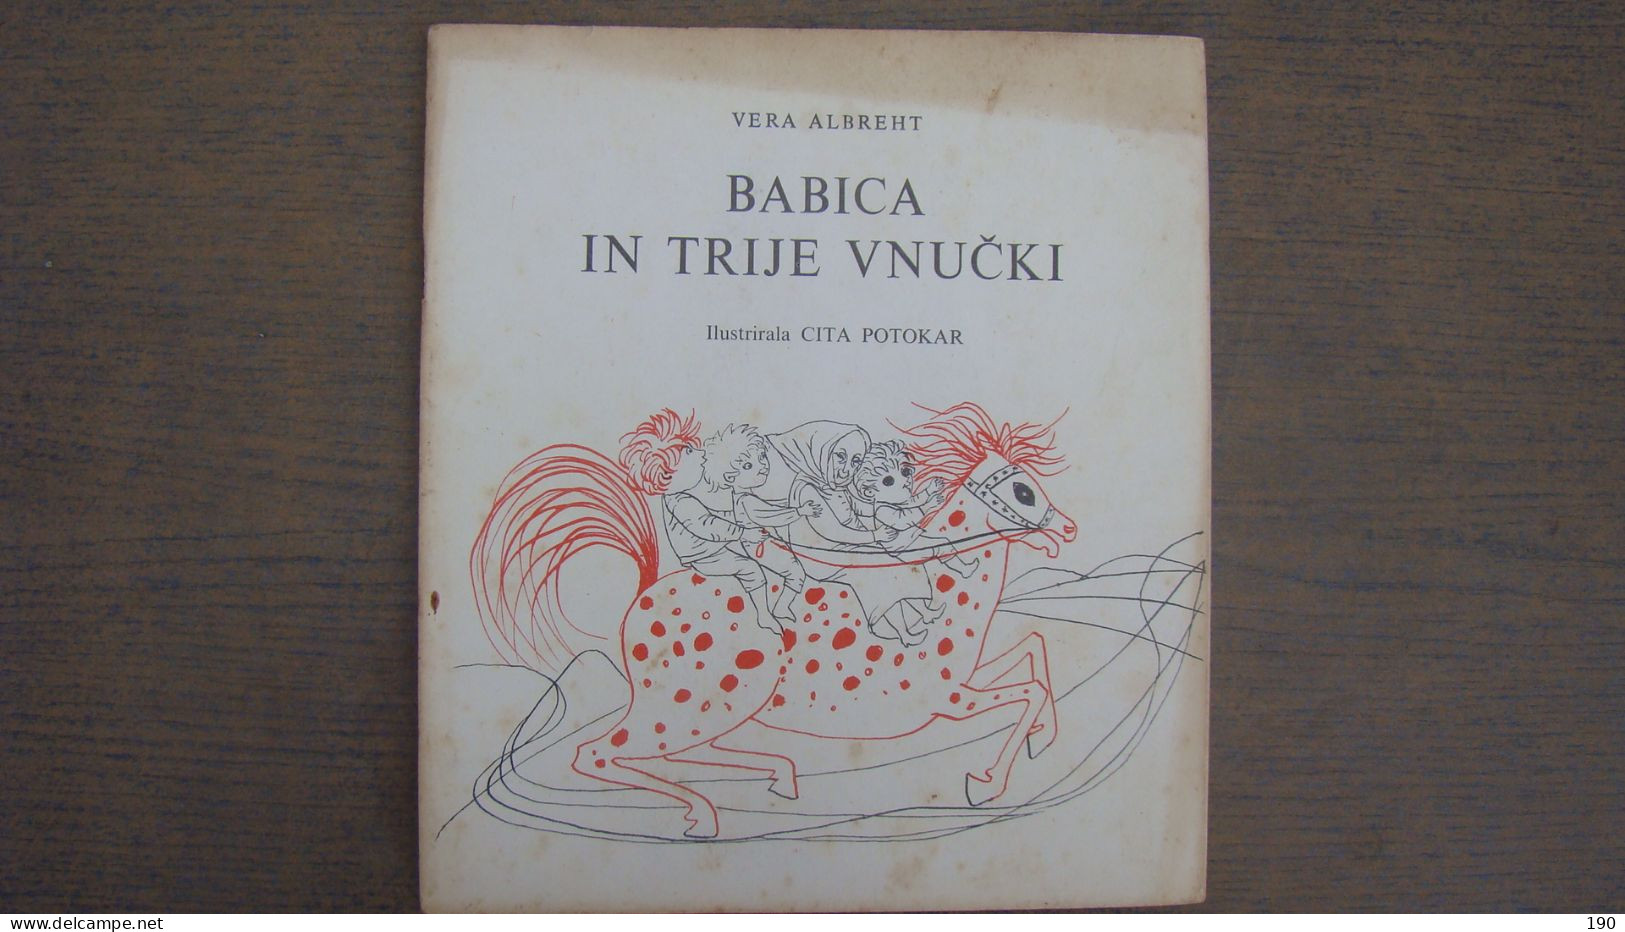 Babica In Trije Vnucki (Vera Albreht),Illustrated: Cita Potokar - Langues Slaves